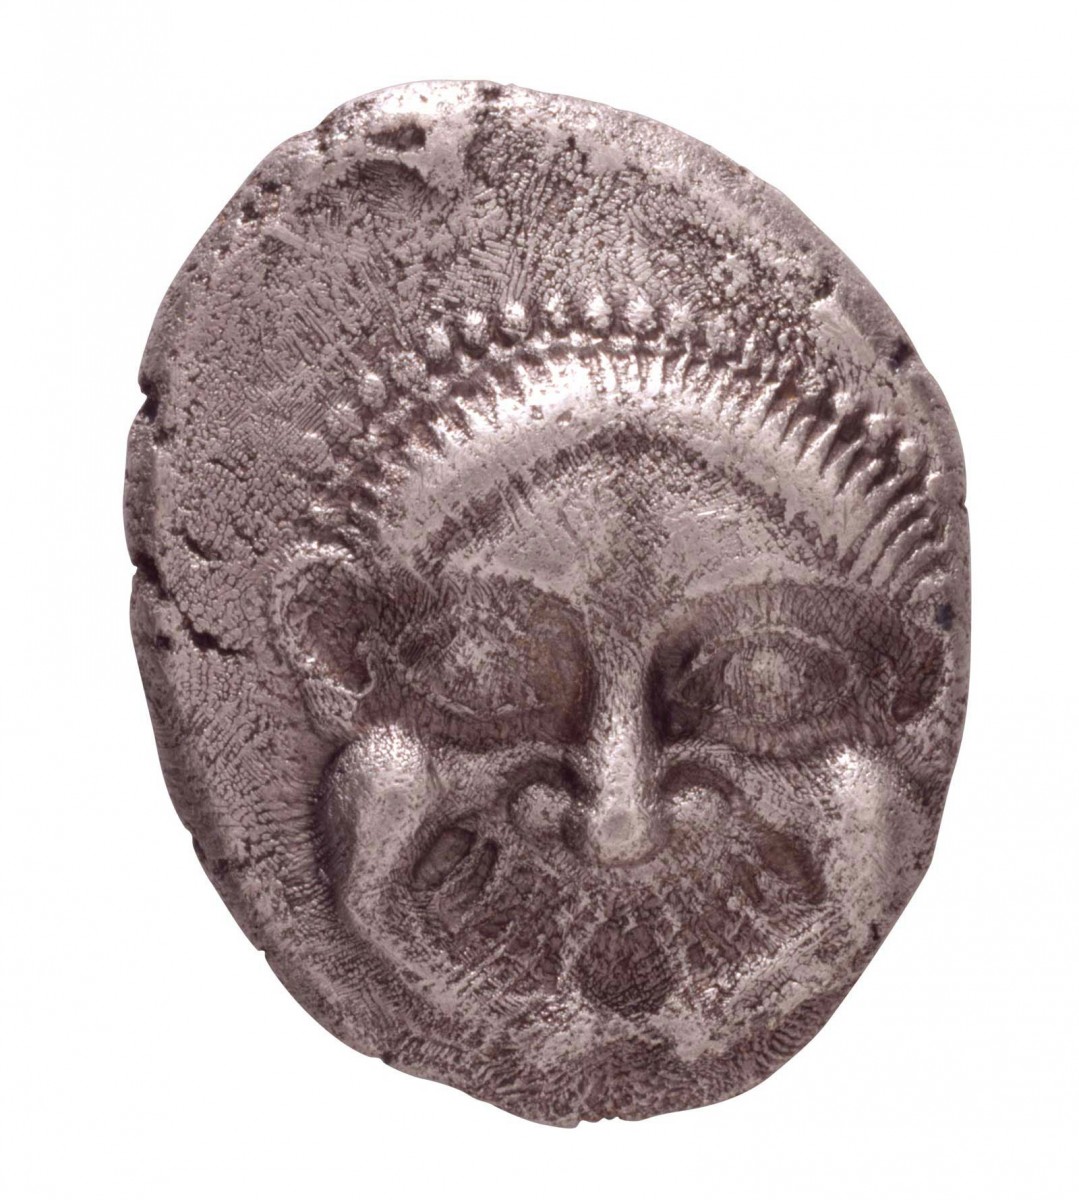 Αθηναϊκό τετράδραχμο με γοργόνειο, β’ μισό 6ου αι. π.Χ., Νομισματικό Μουσείο, Αθήνα.